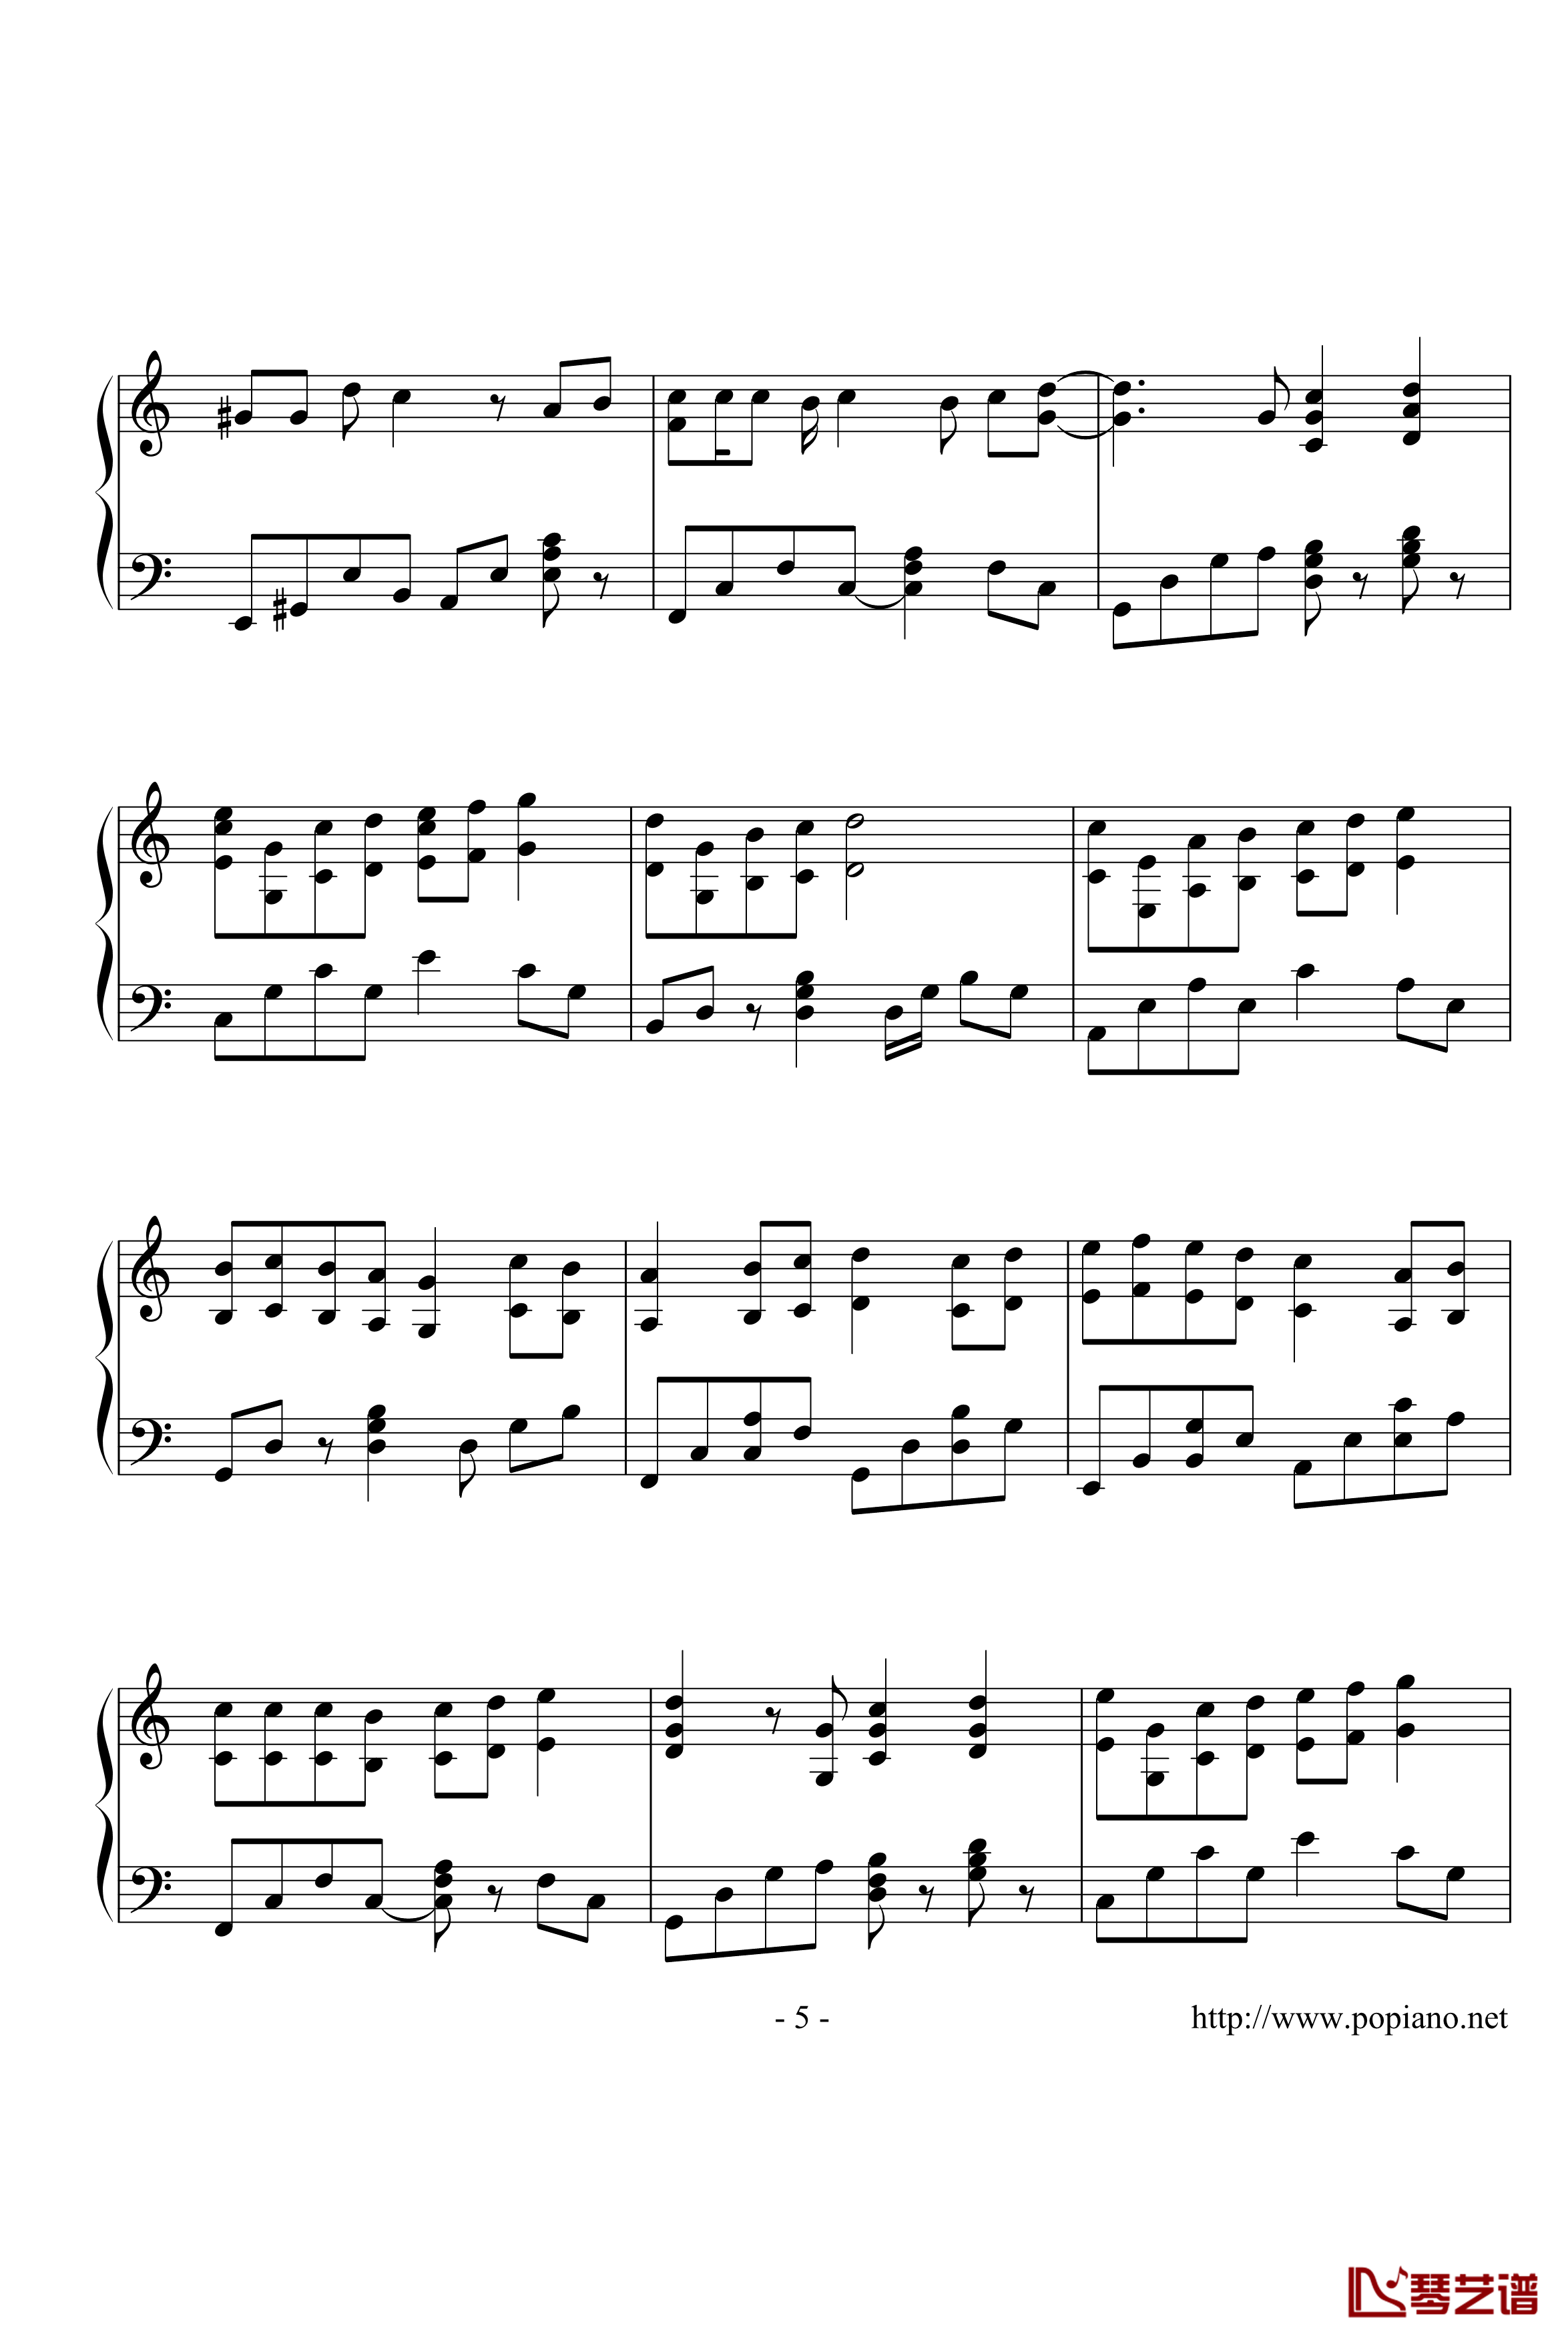 棉花糖钢琴谱-演奏版-至上励合5